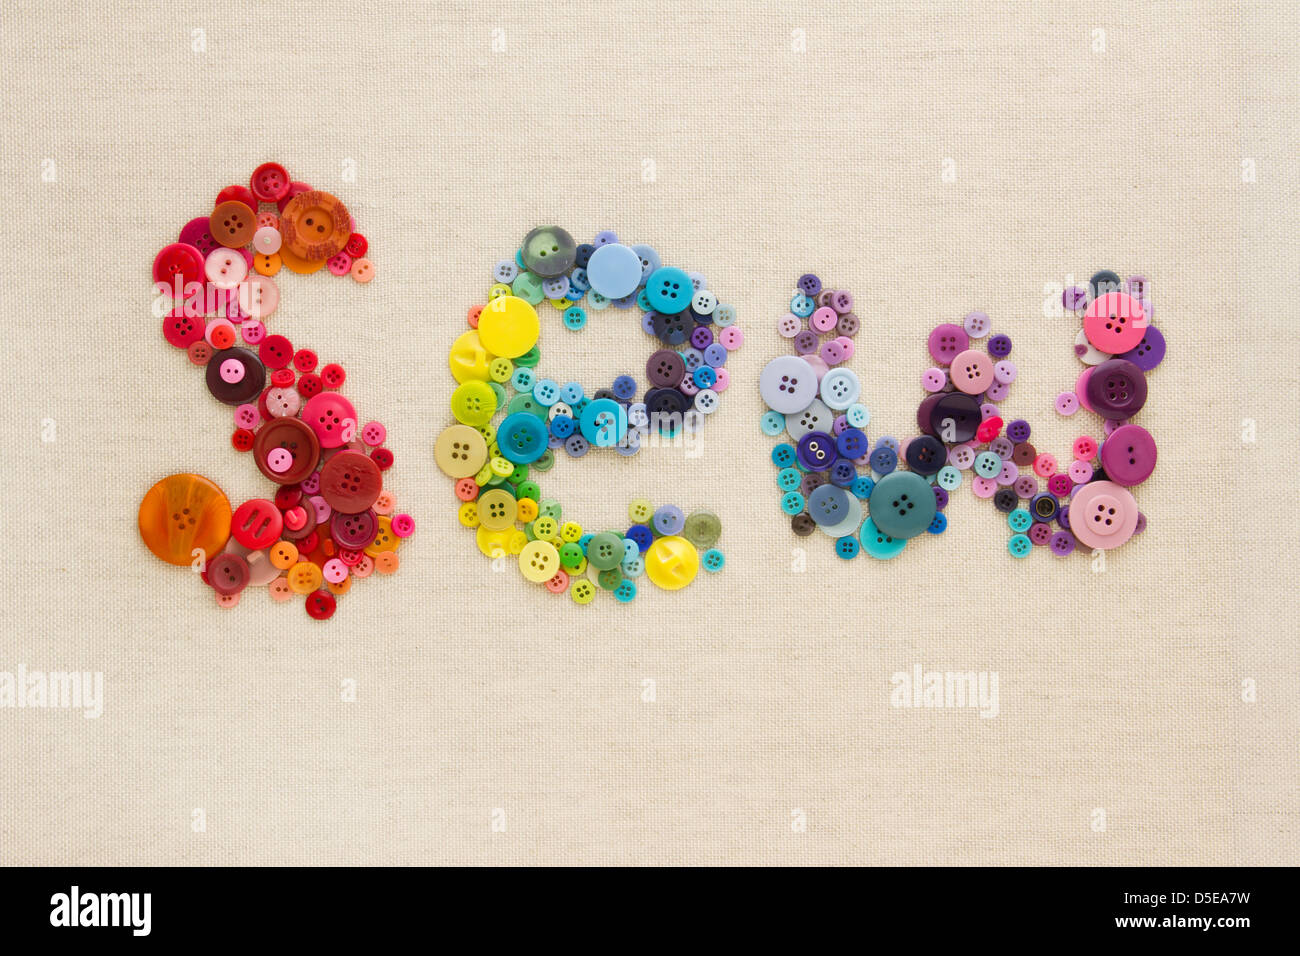 Das Wort "SEW" ausgeschrieben in bunten Tasten, angeordnet in Regenbogen-Farben-Formation - auf hessisch Stockfoto